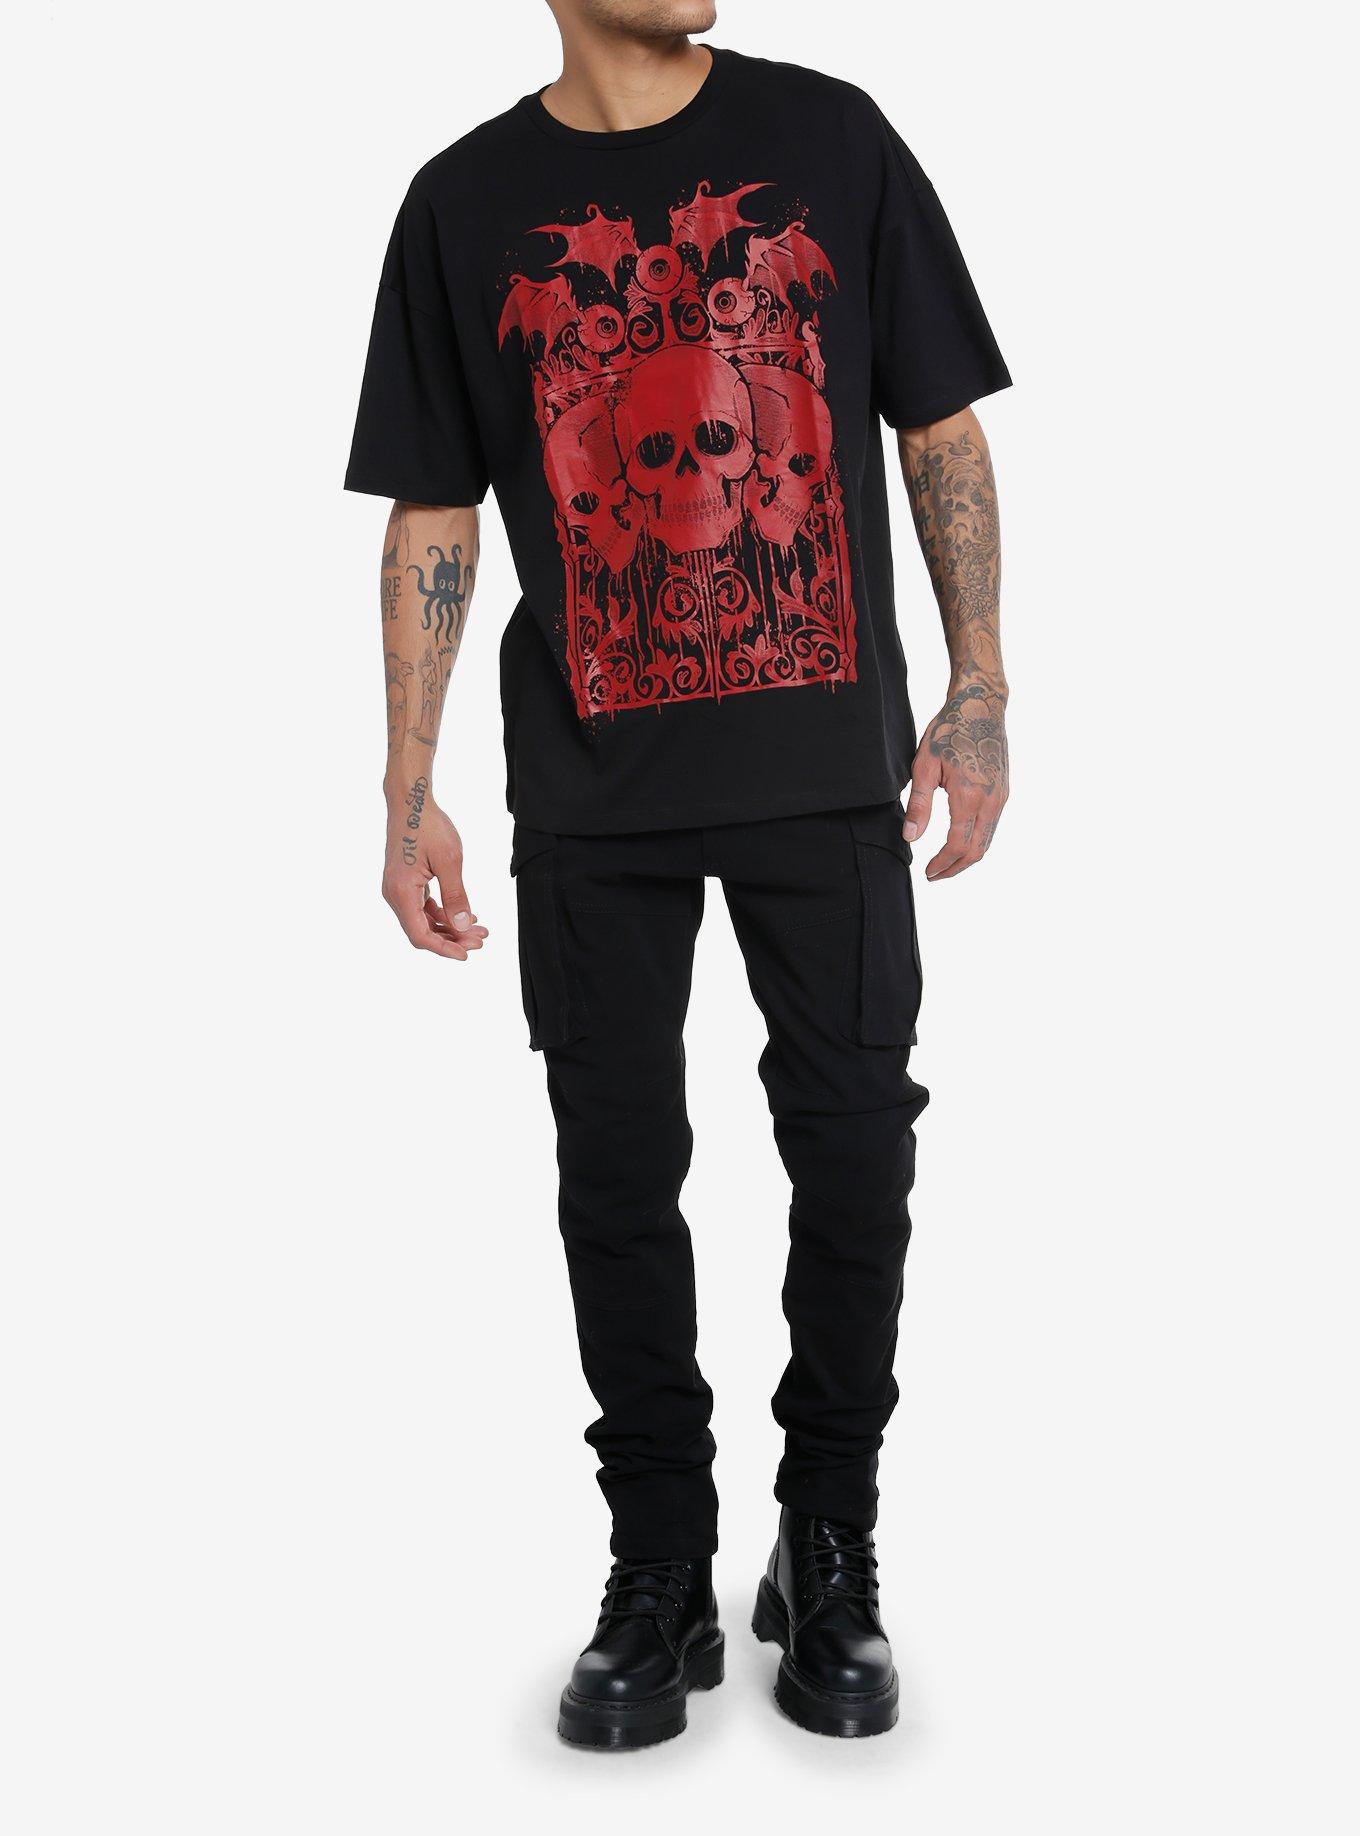 Social Collision® Skulls & Winged Eyeballs T-Shirt, RED, alternate